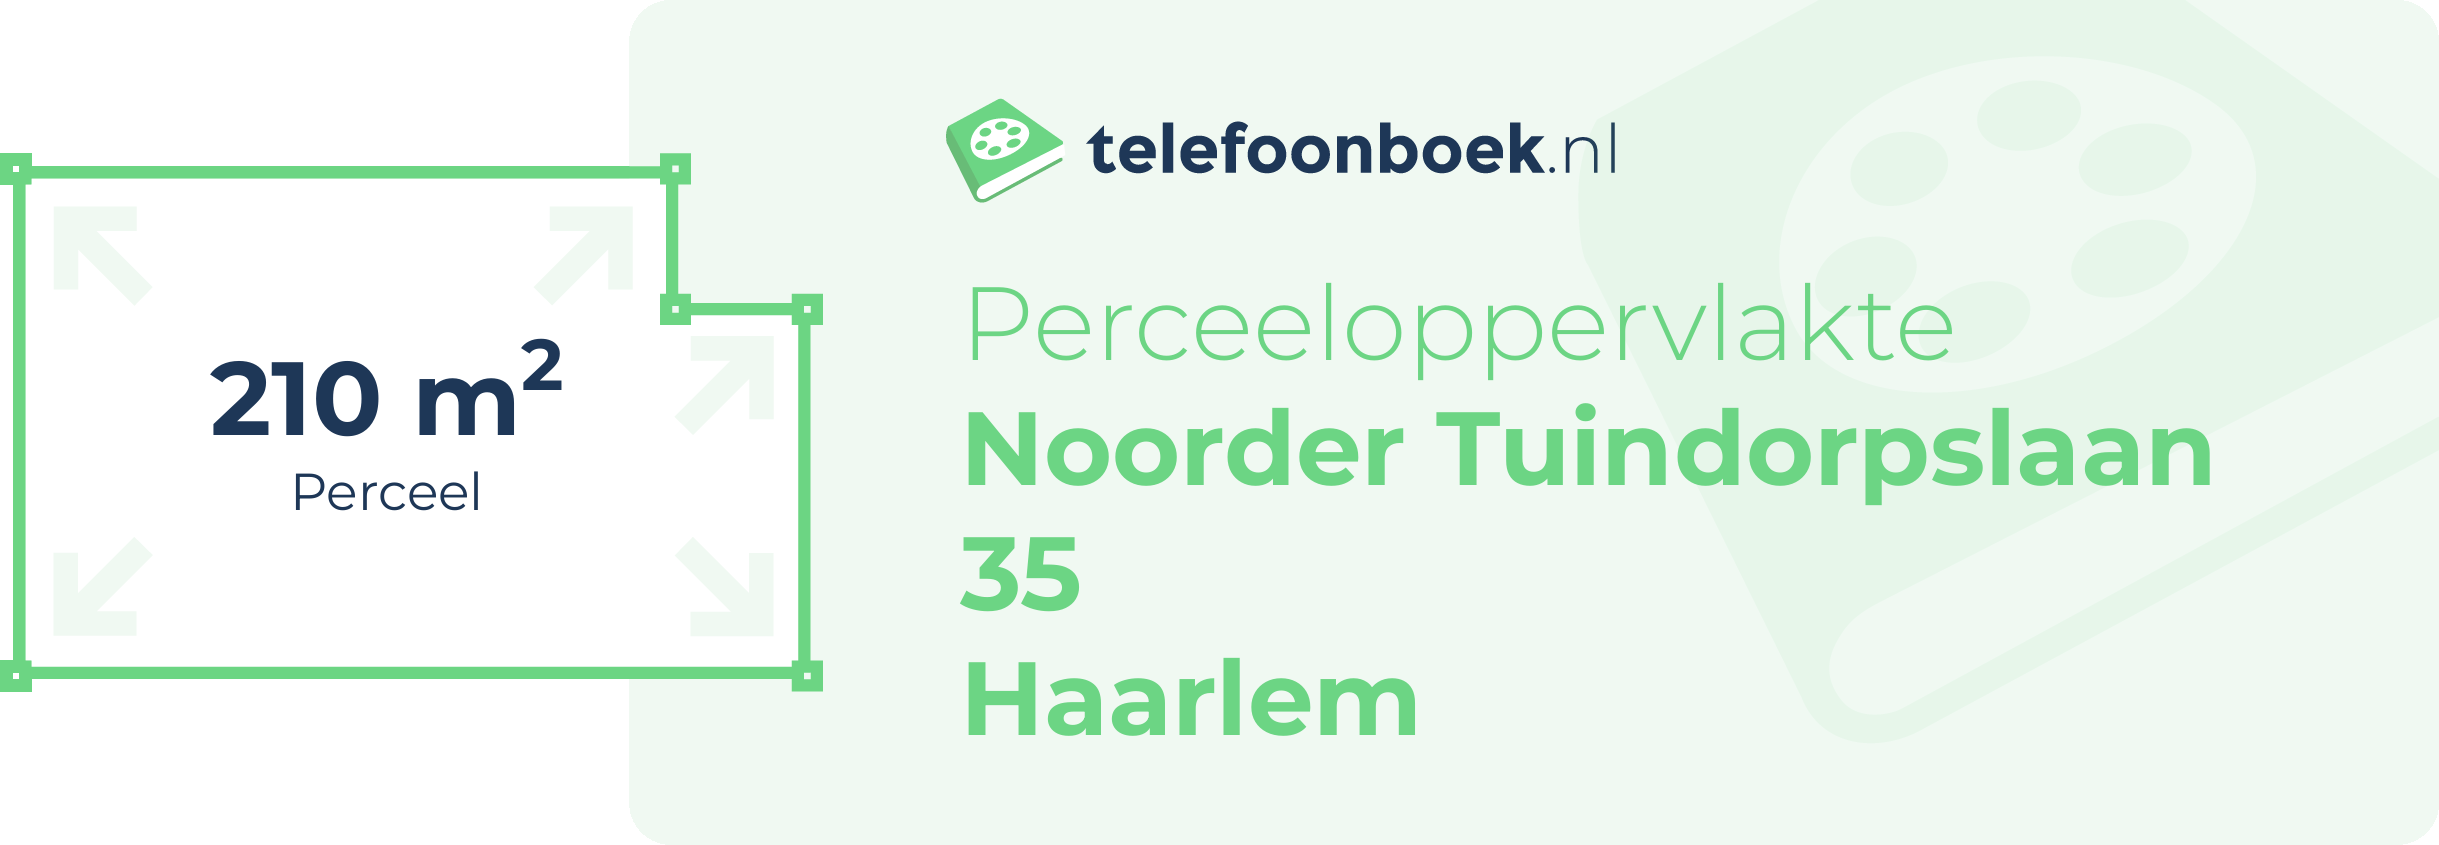 Perceeloppervlakte Noorder Tuindorpslaan 35 Haarlem